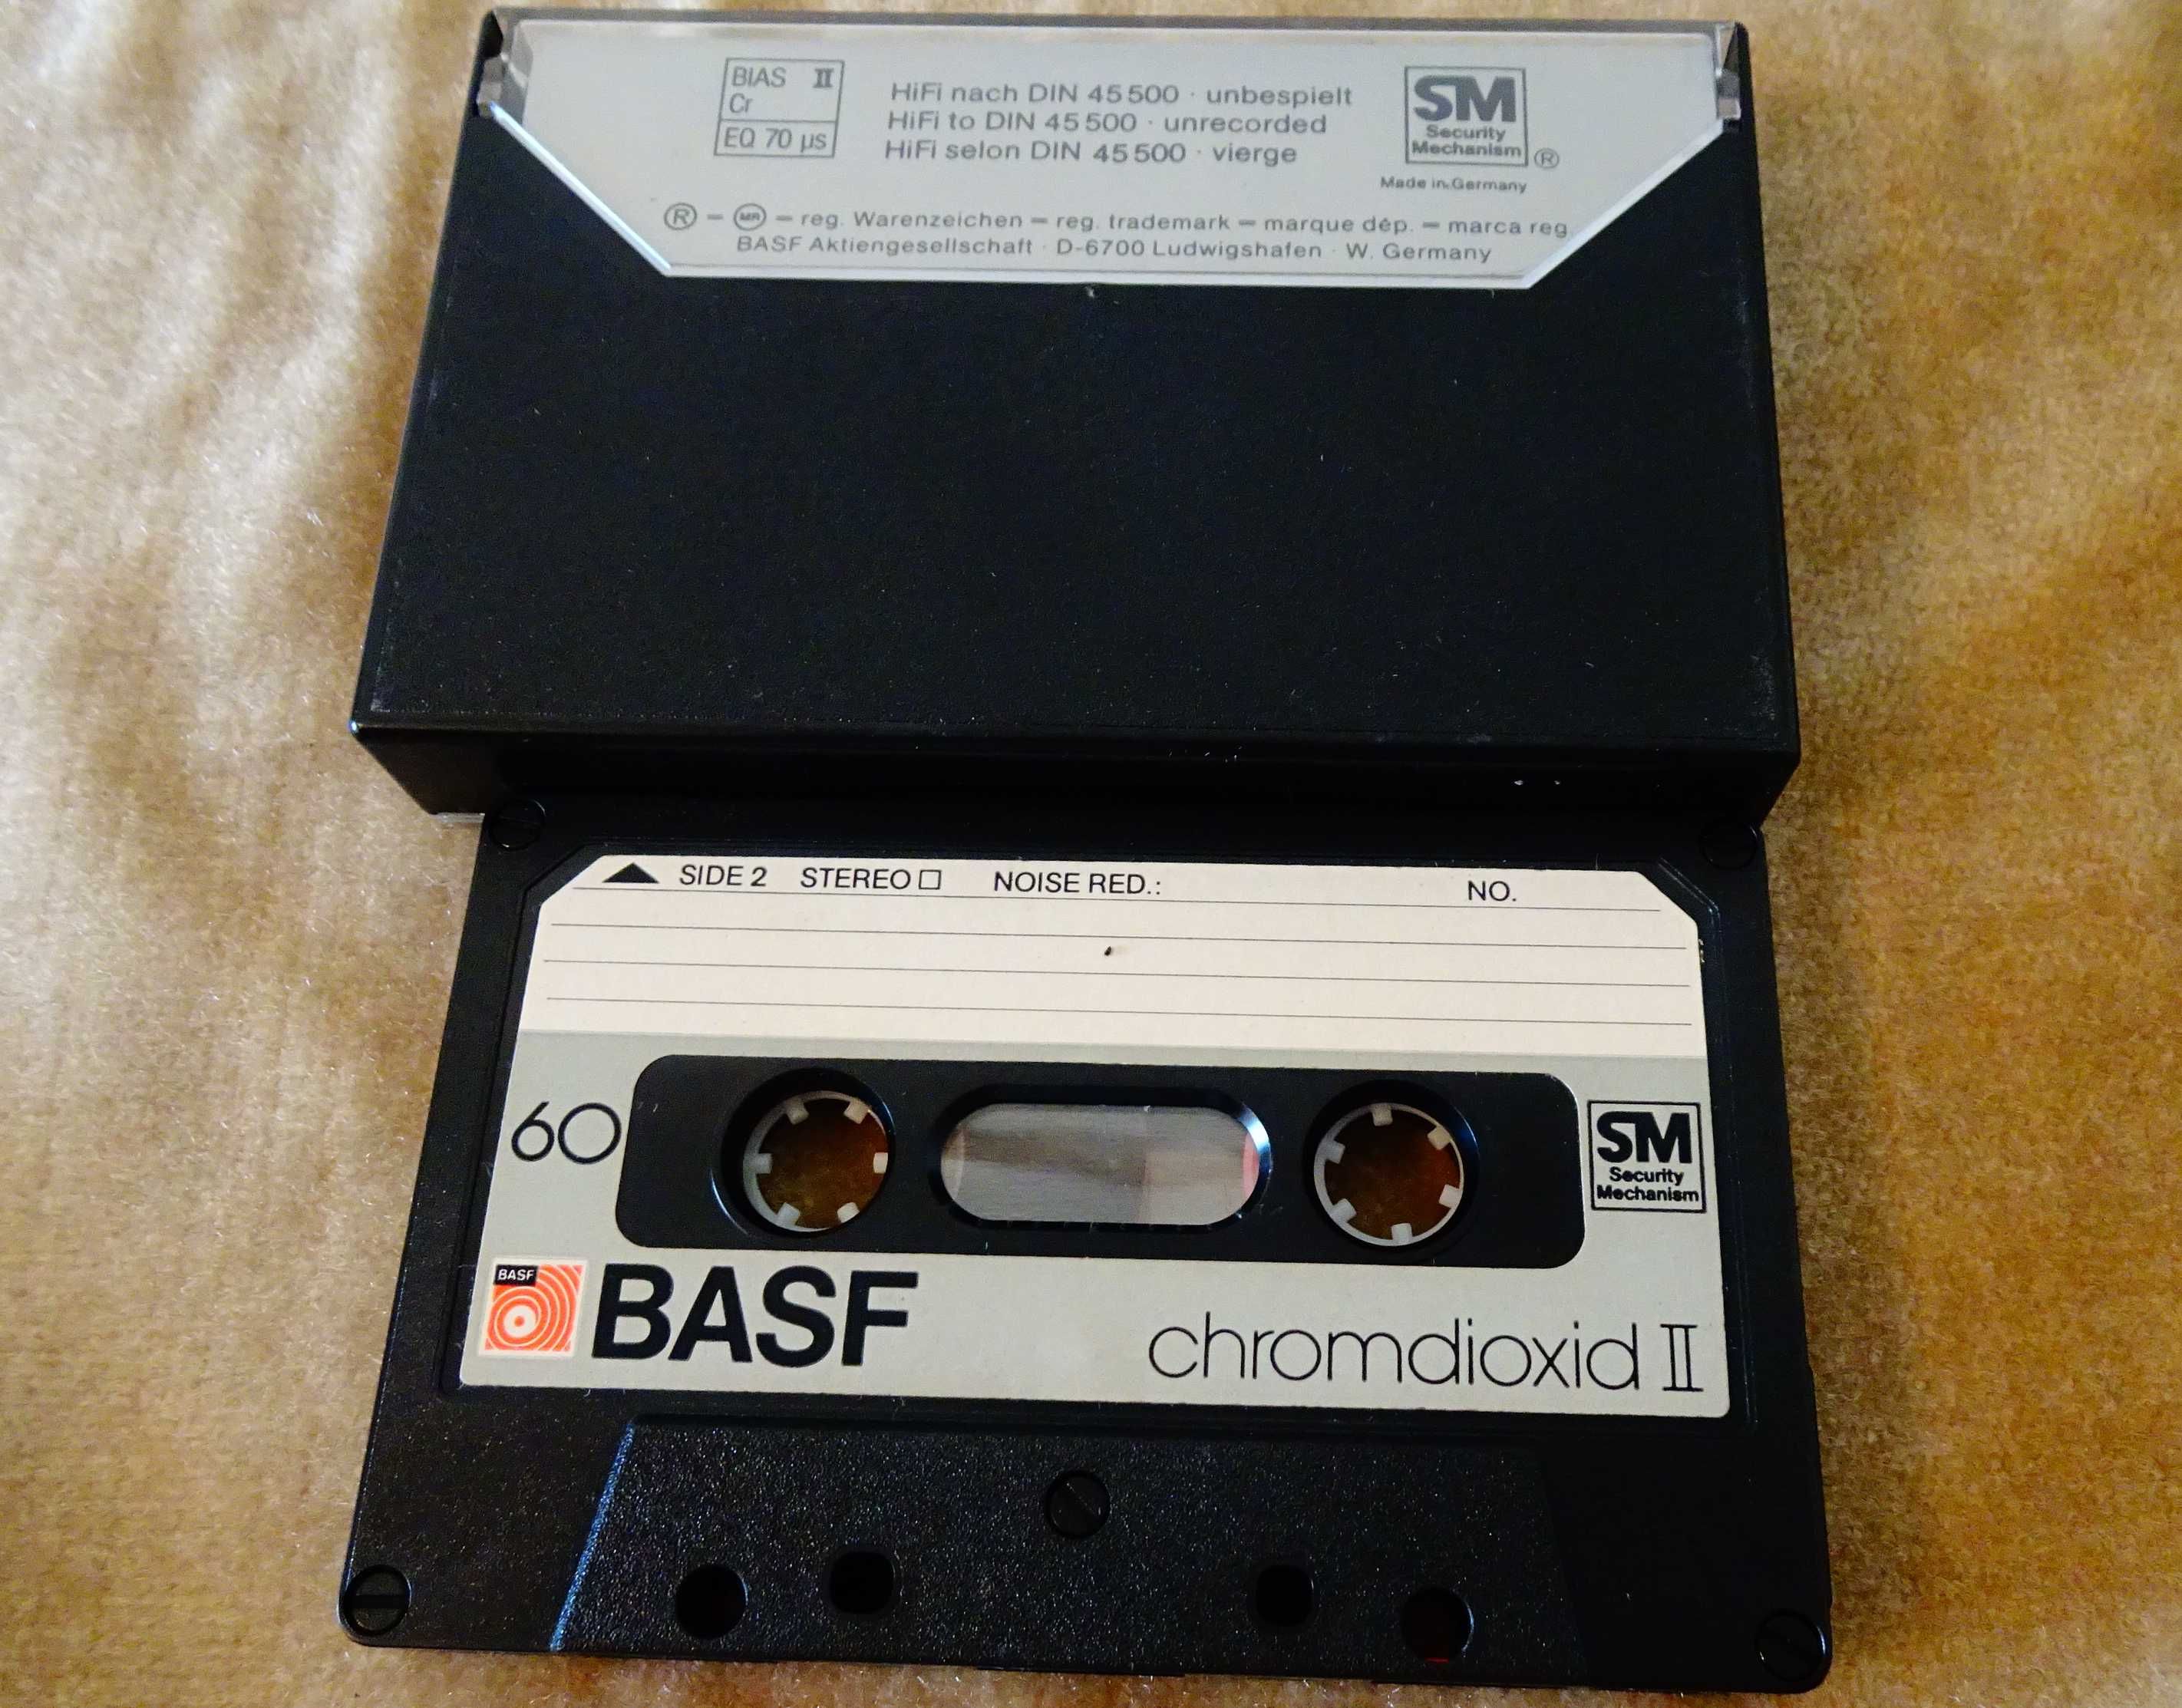 Аудиокасета BASF с Ronnie James Dio и Nazareth.